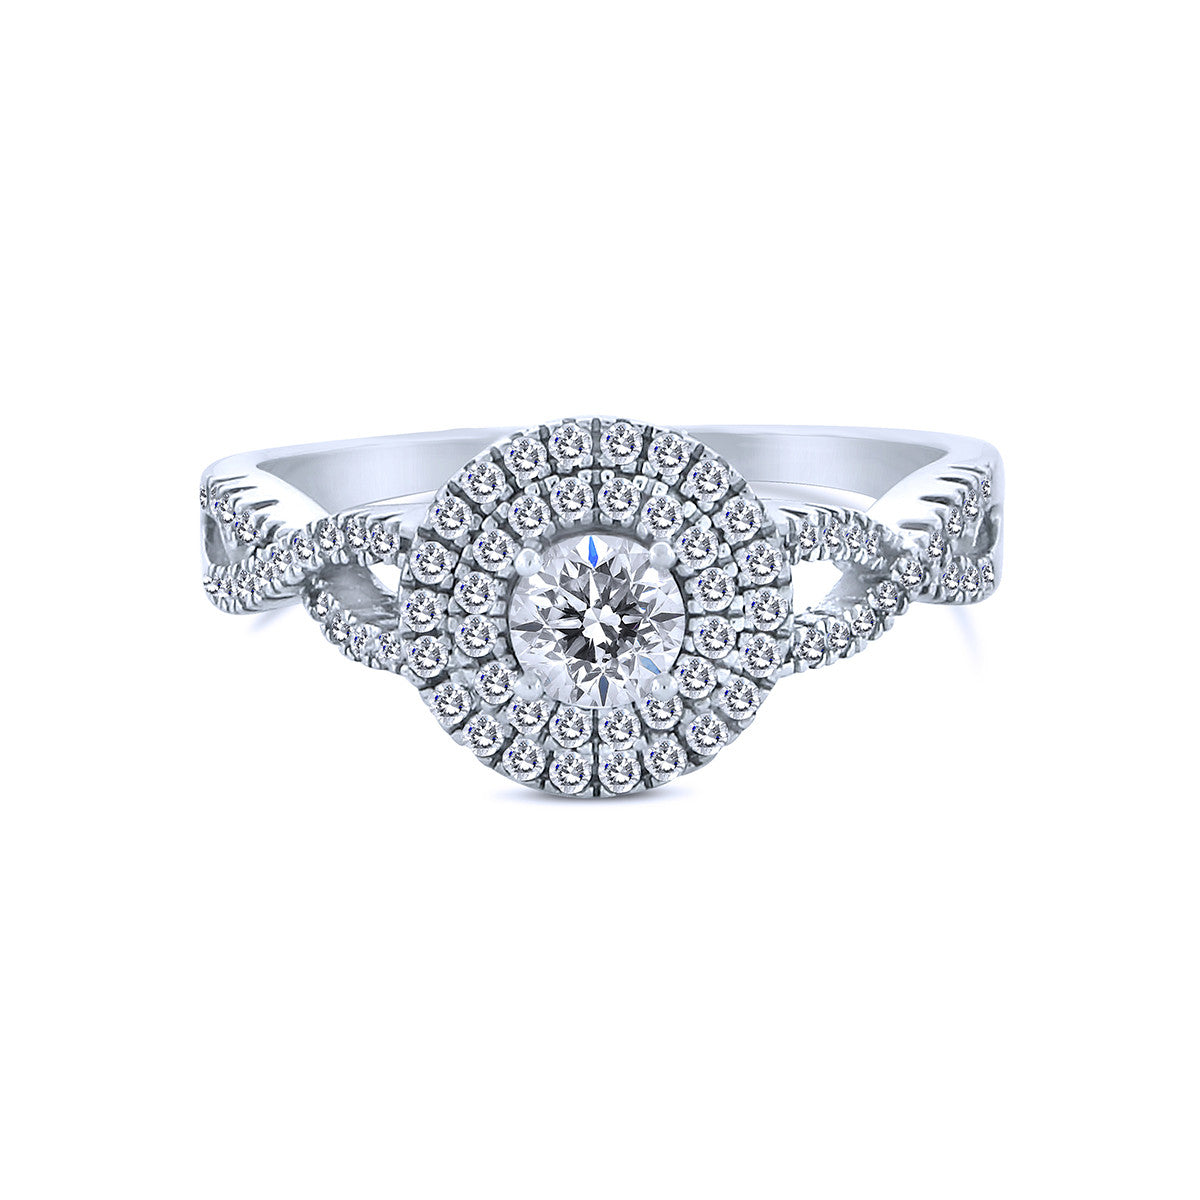 Swarovski Engagement Rings VS Diamond – Liori Diamonds